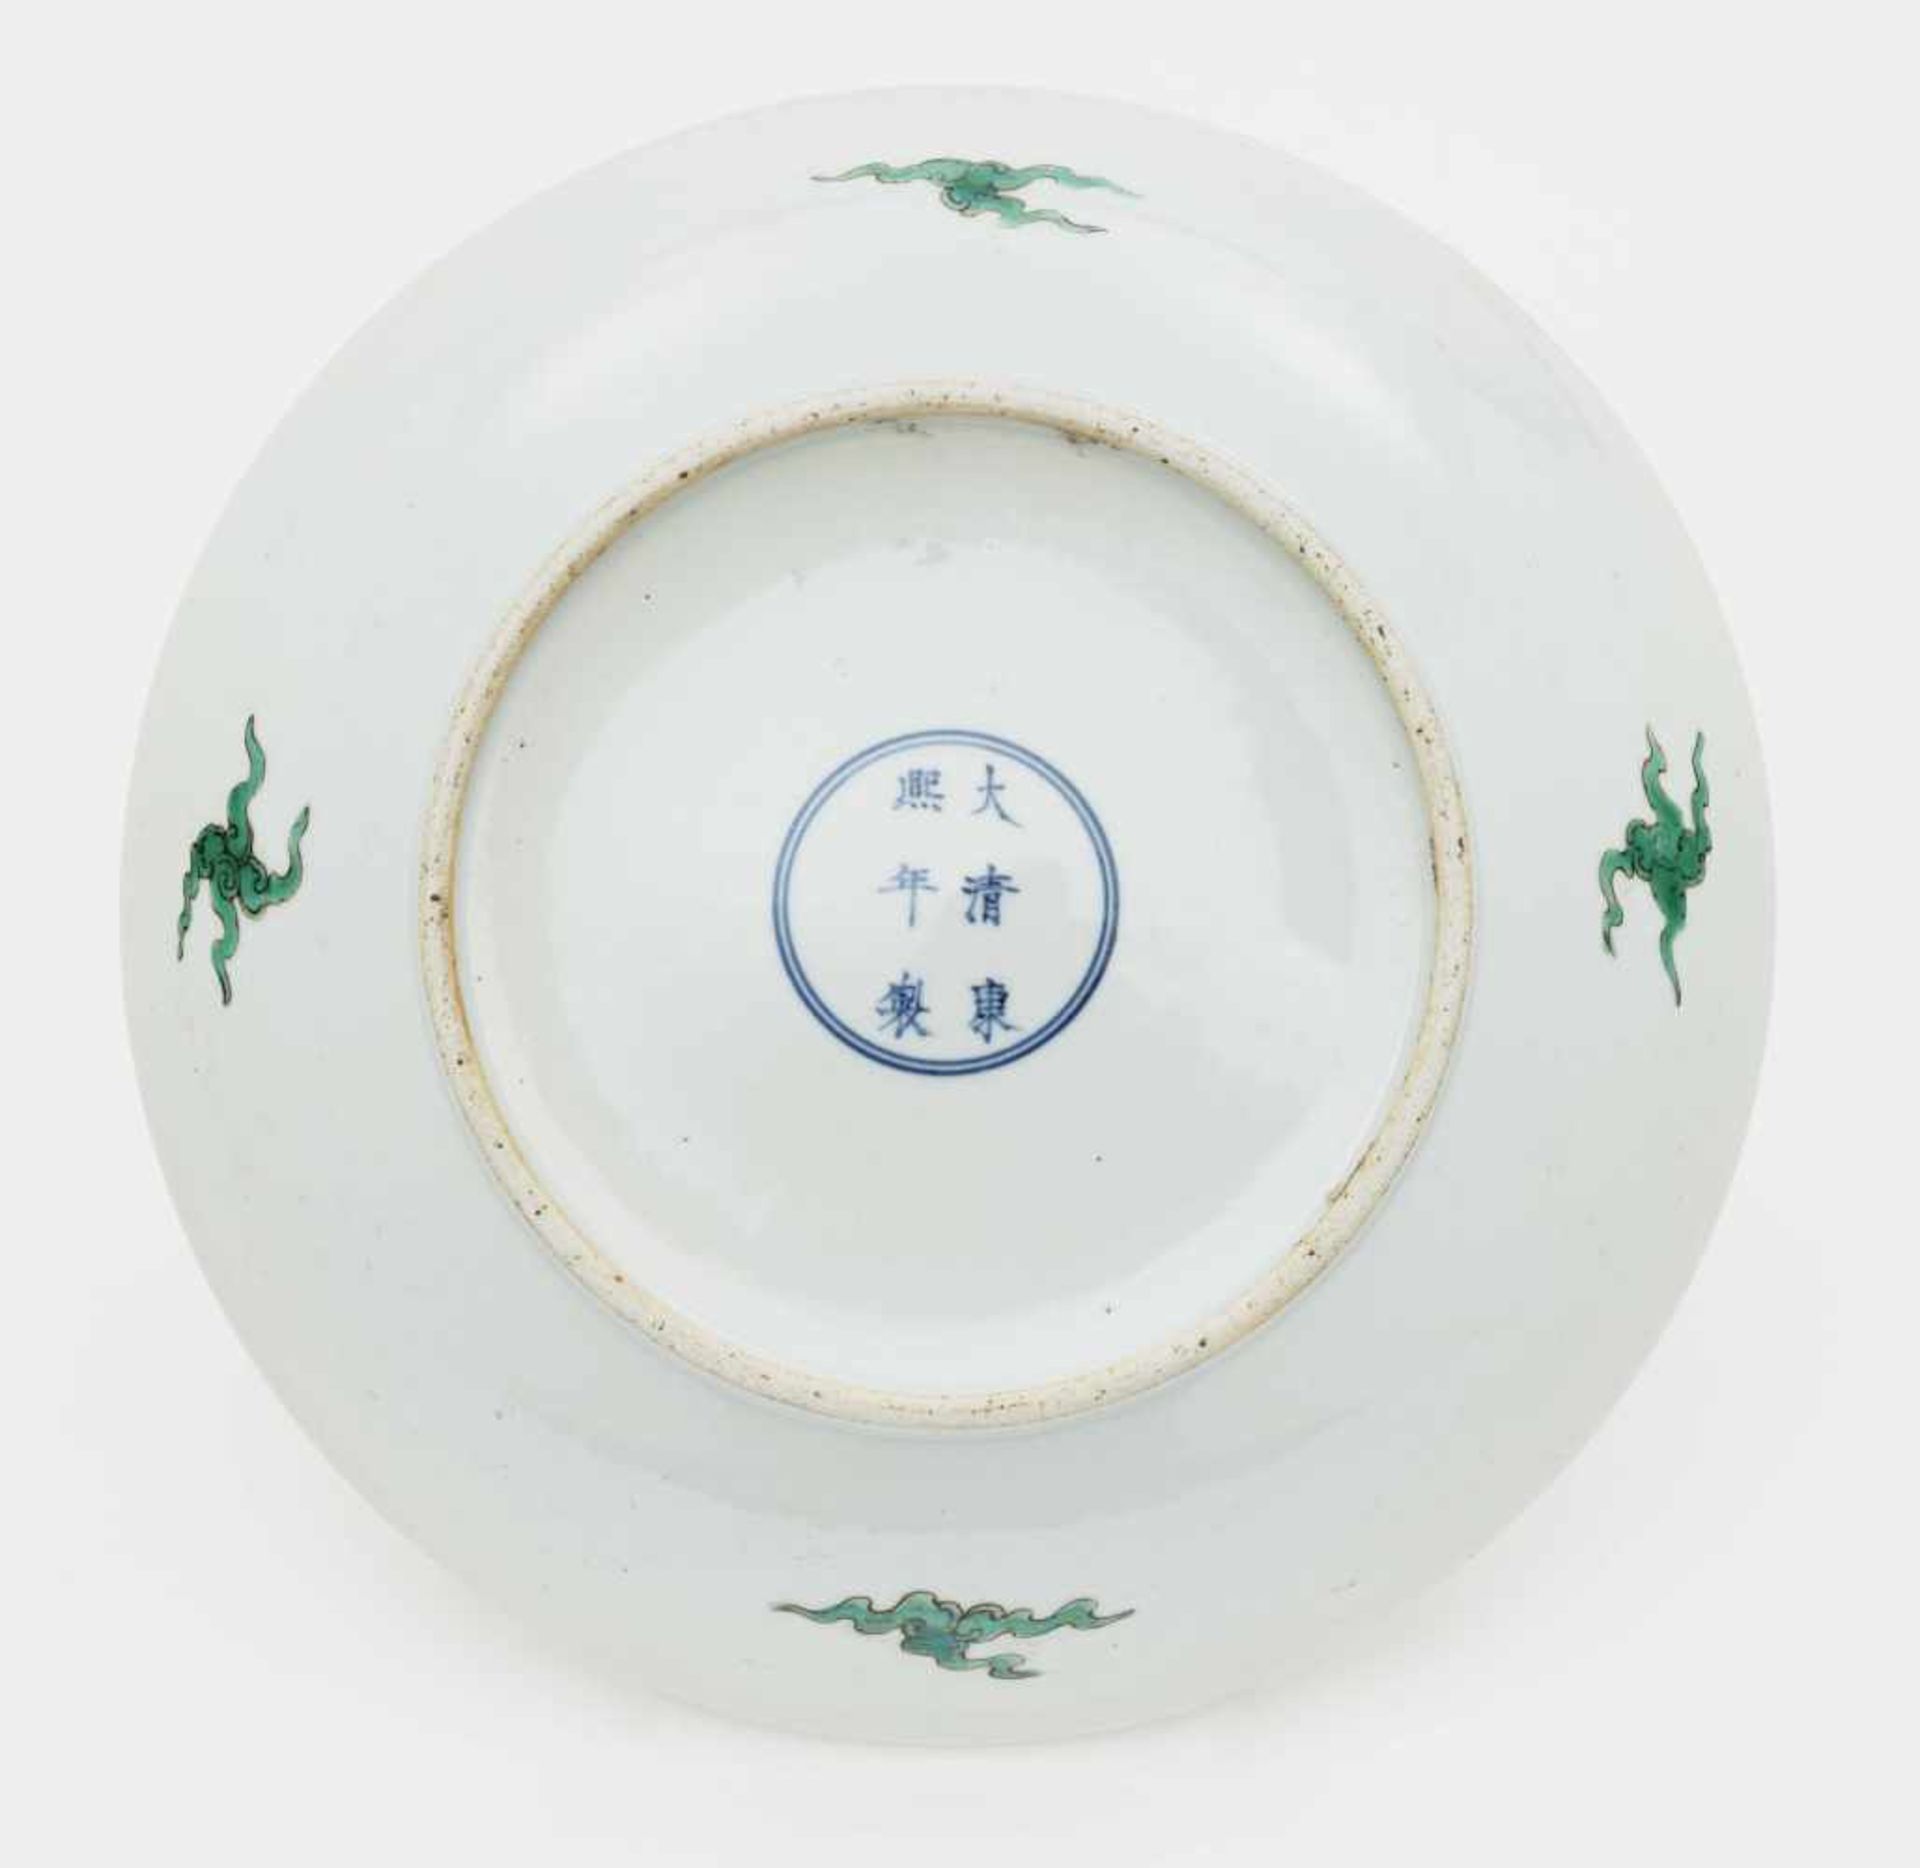 Schale China Porzellan. Bunter Drachendekor im Stil der "Famille verte". Blaue Sechszeichenmarke - Bild 2 aus 3